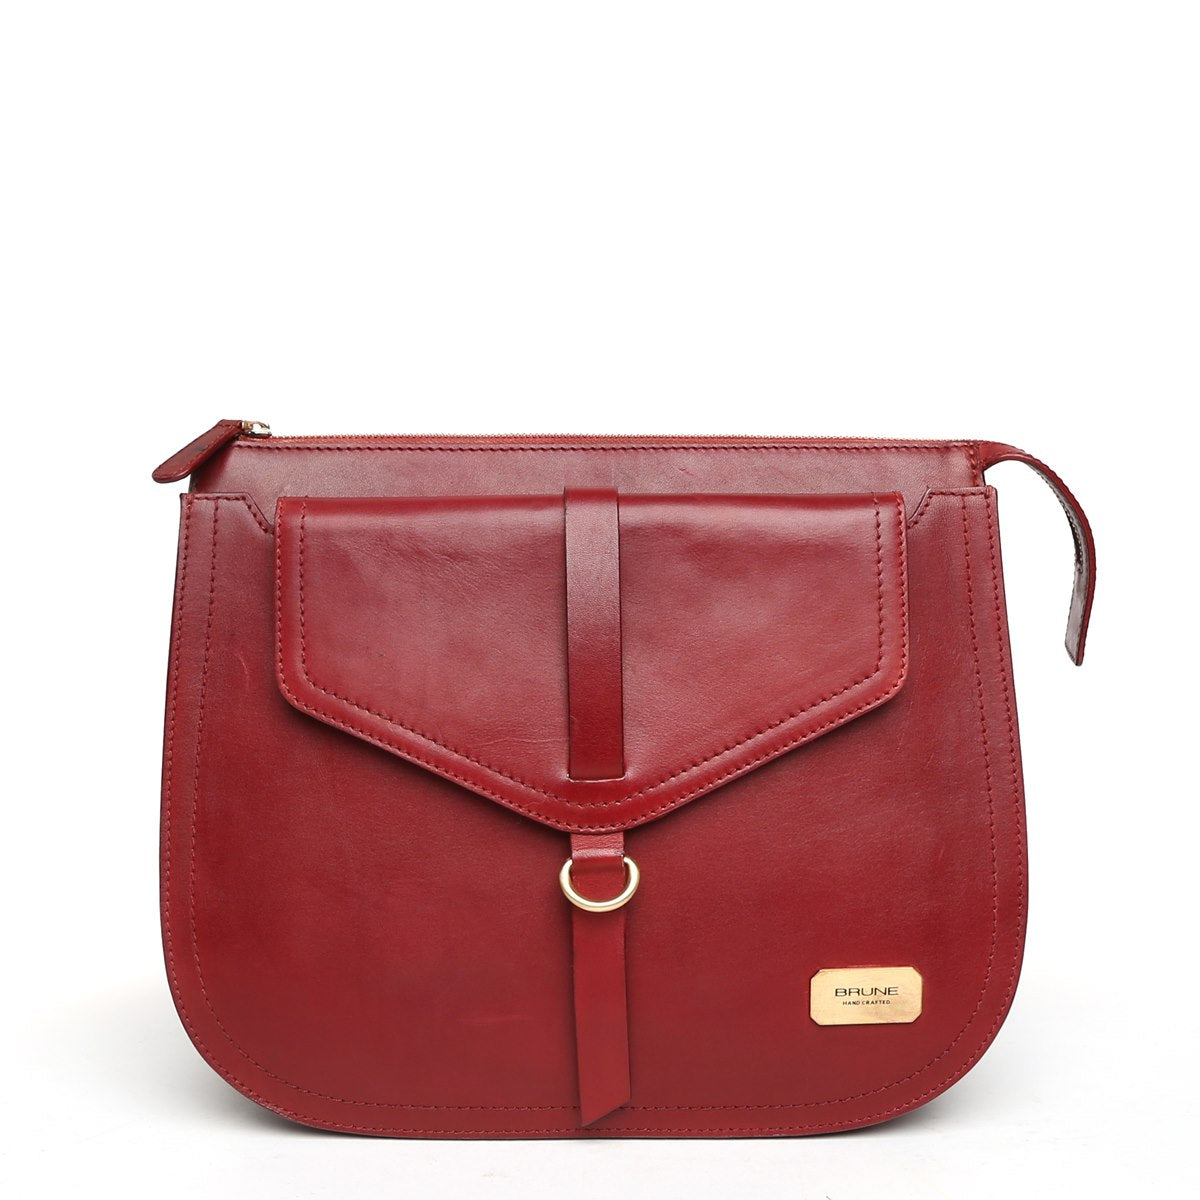 Modern Red Leather Sleek Look Ladies Bag By Brune & Bareskin